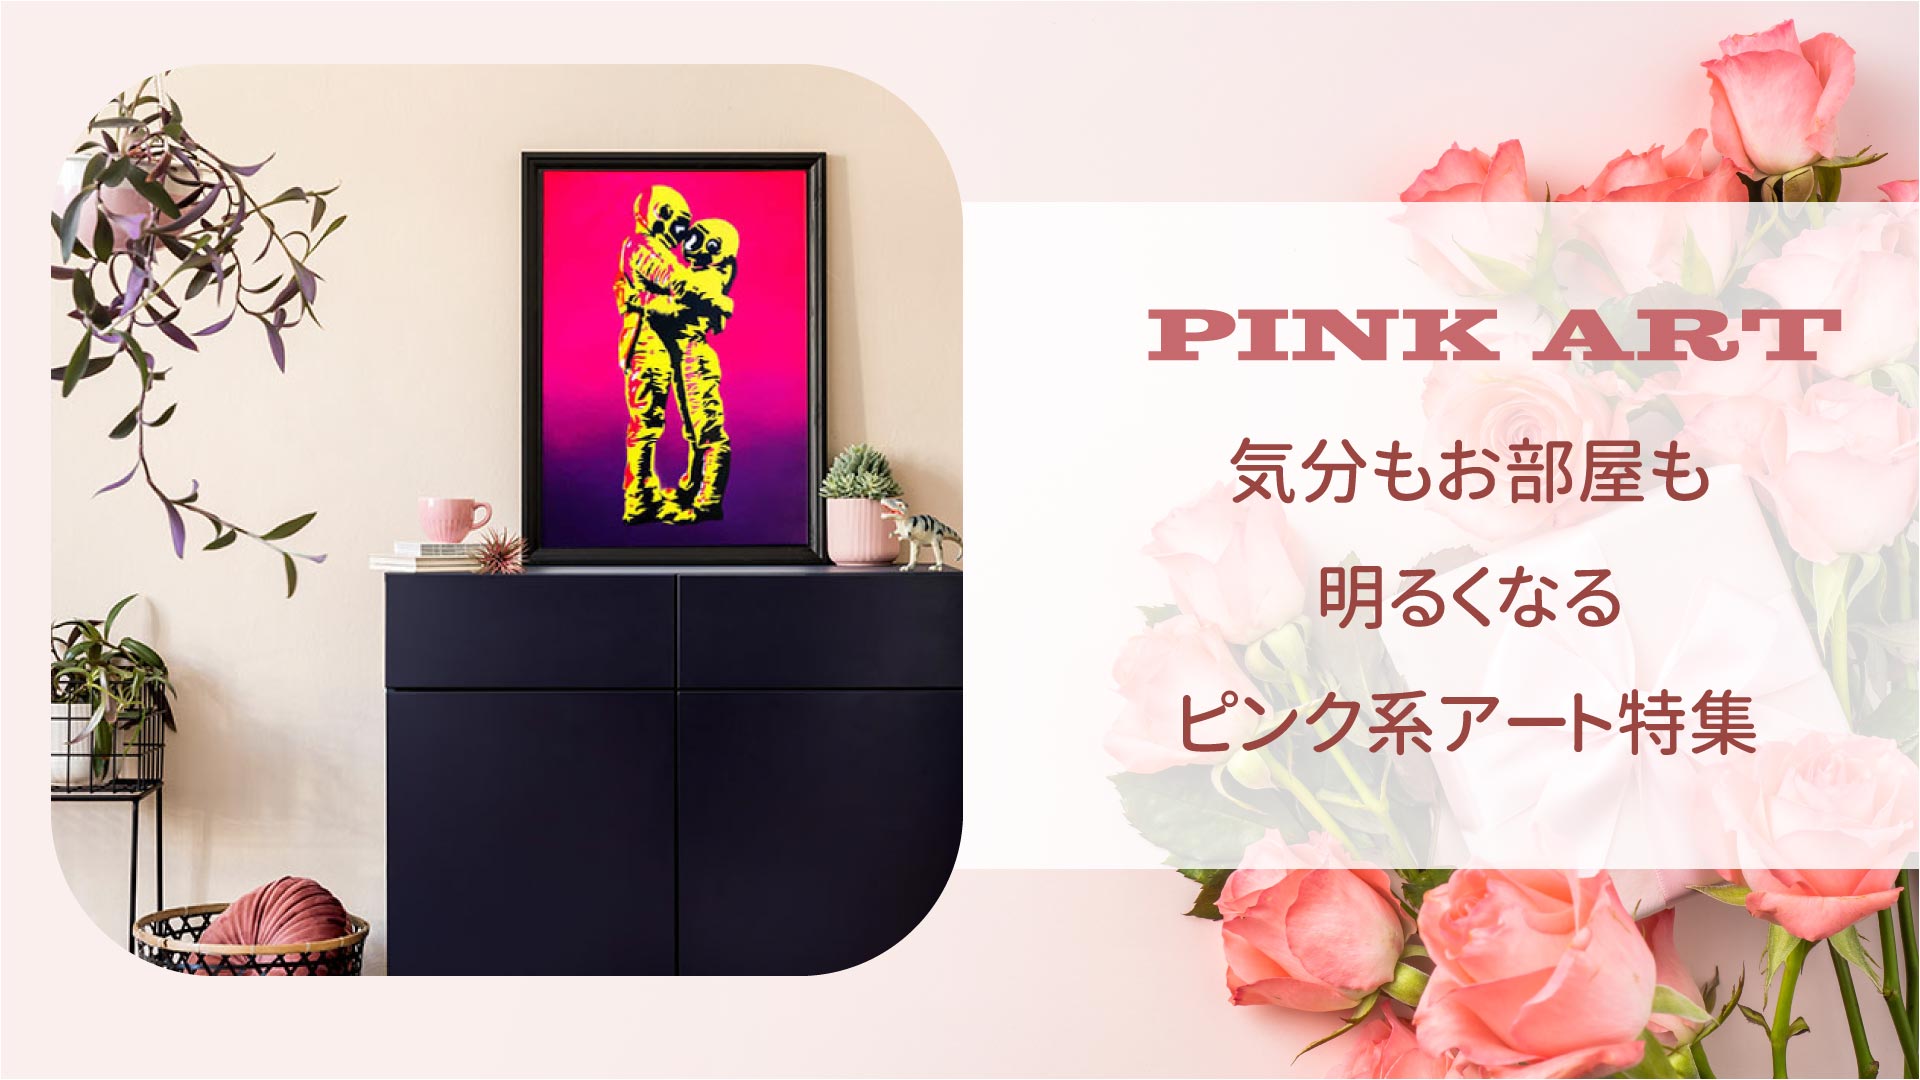 PINK ART 気分もお部屋も明るくなるピンク系アート特集